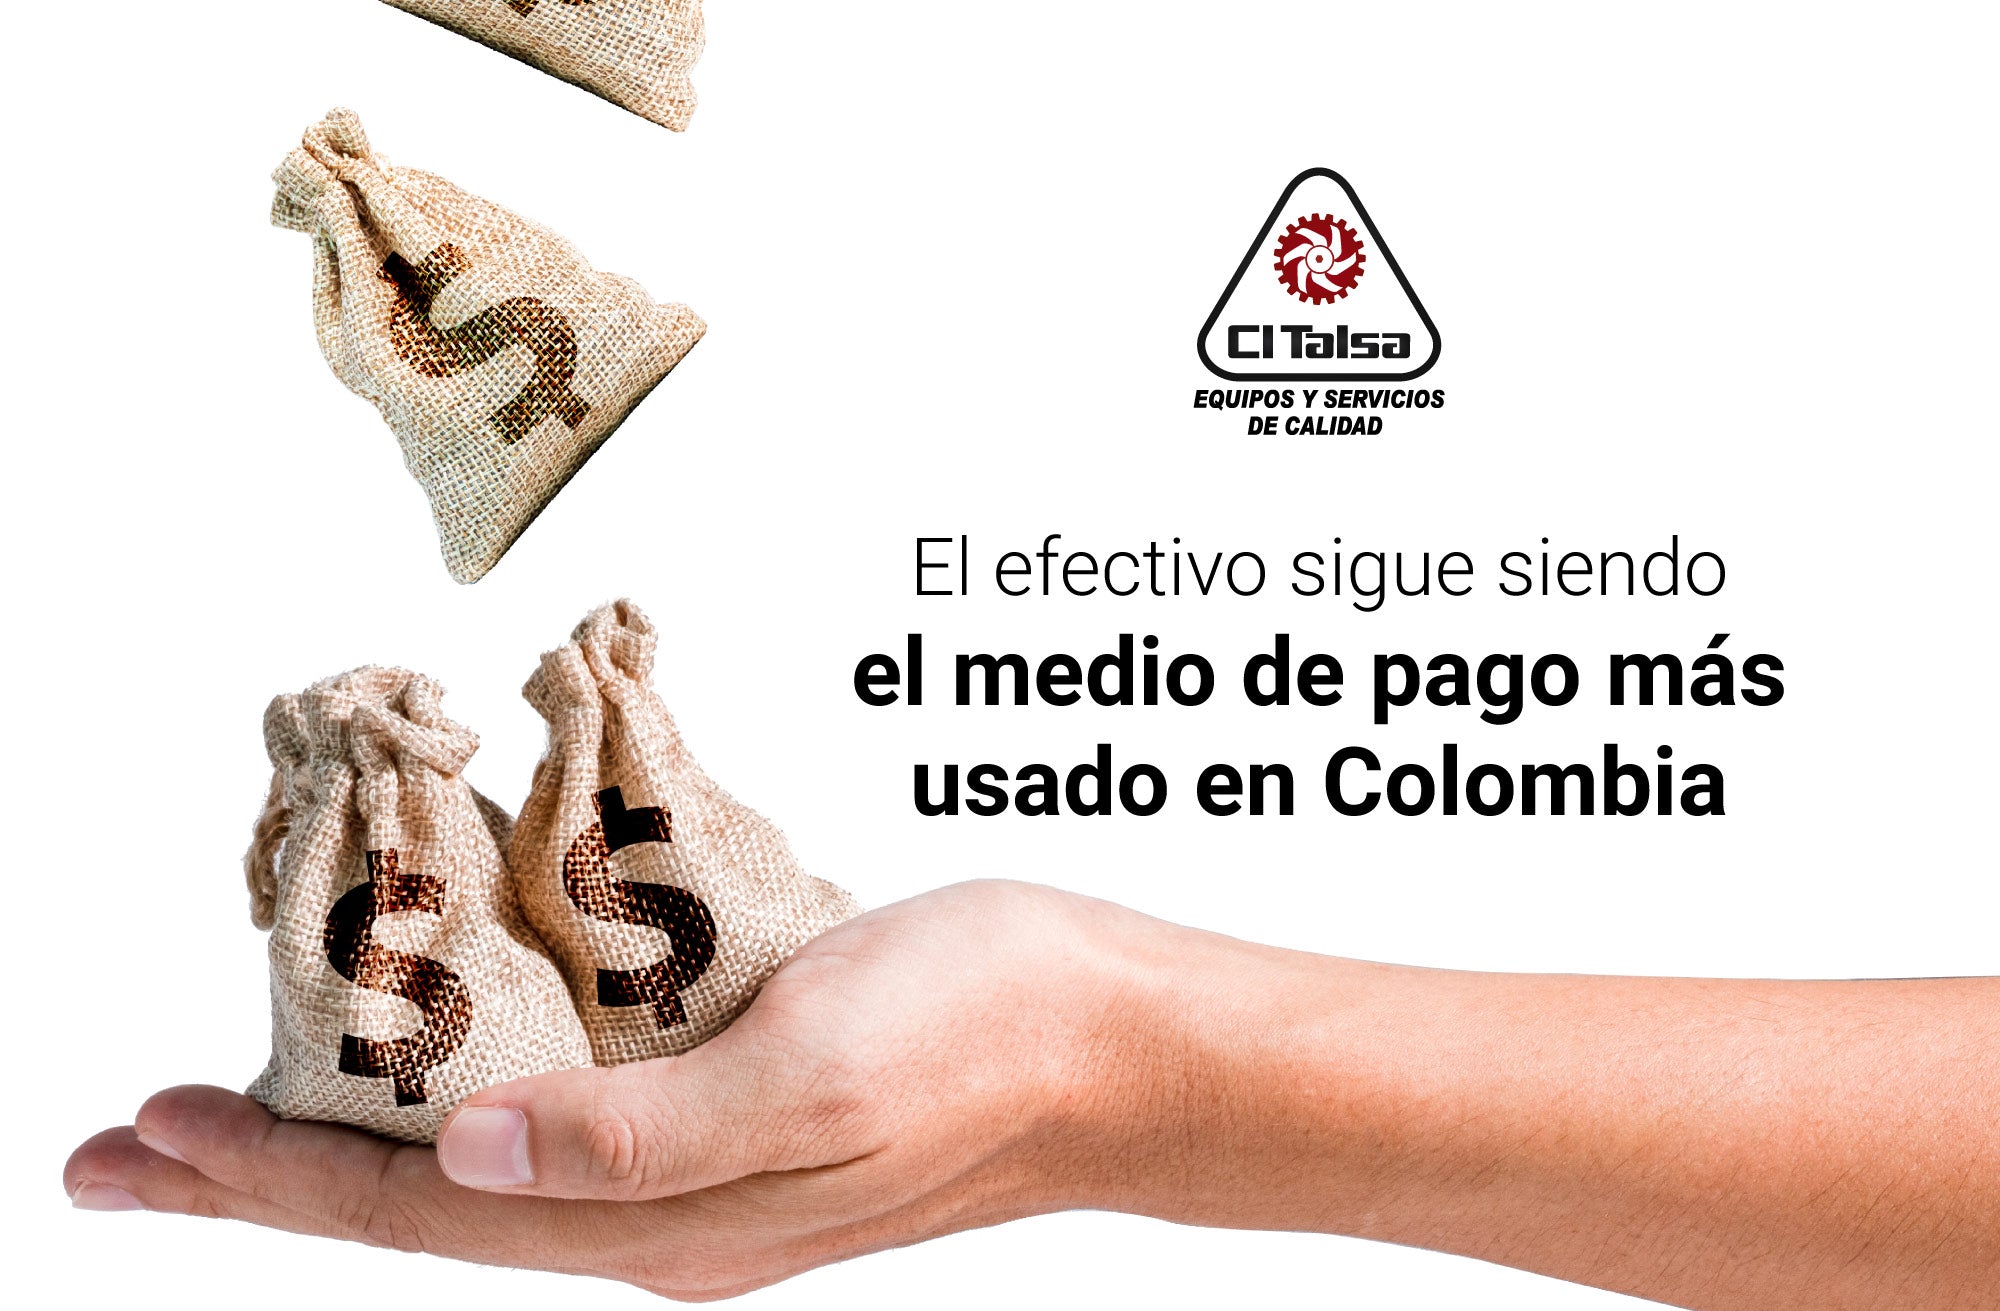 El efectivo sigue siendo el medio de pago más usado en Colombia